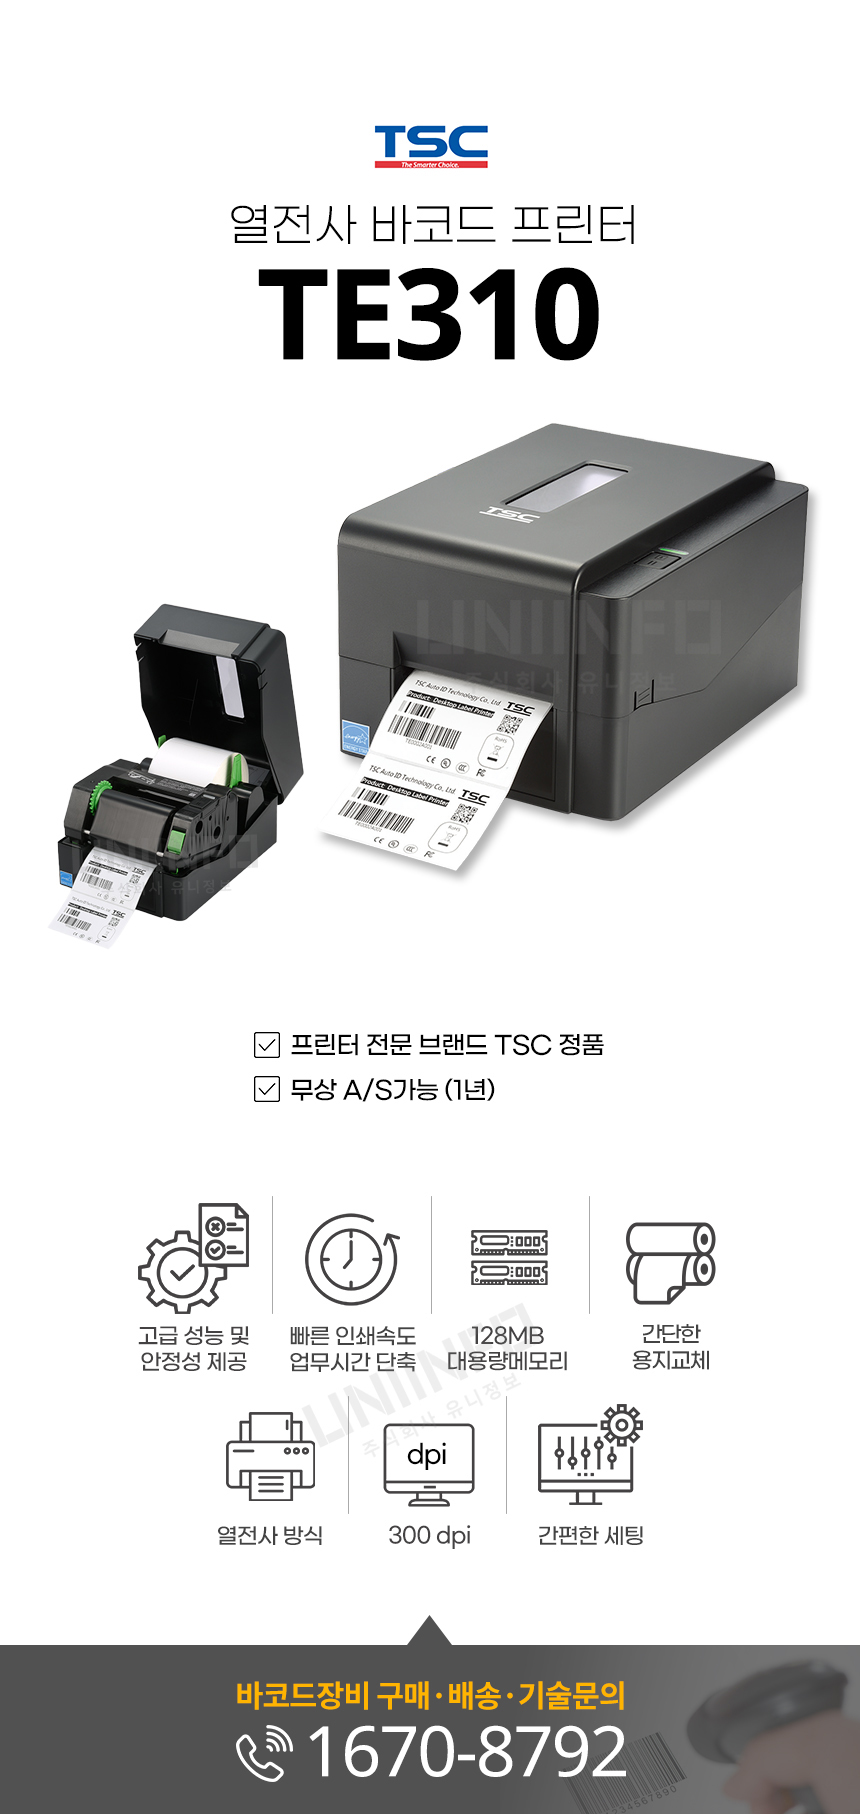 tsc 열전사 바코드 프린터 te310 무상 as 가능 고성능 및 안정성 빠른 인쇄 속도 128mb 대용량 메모리 간단한 용지교체 열전사 방식 300dpi